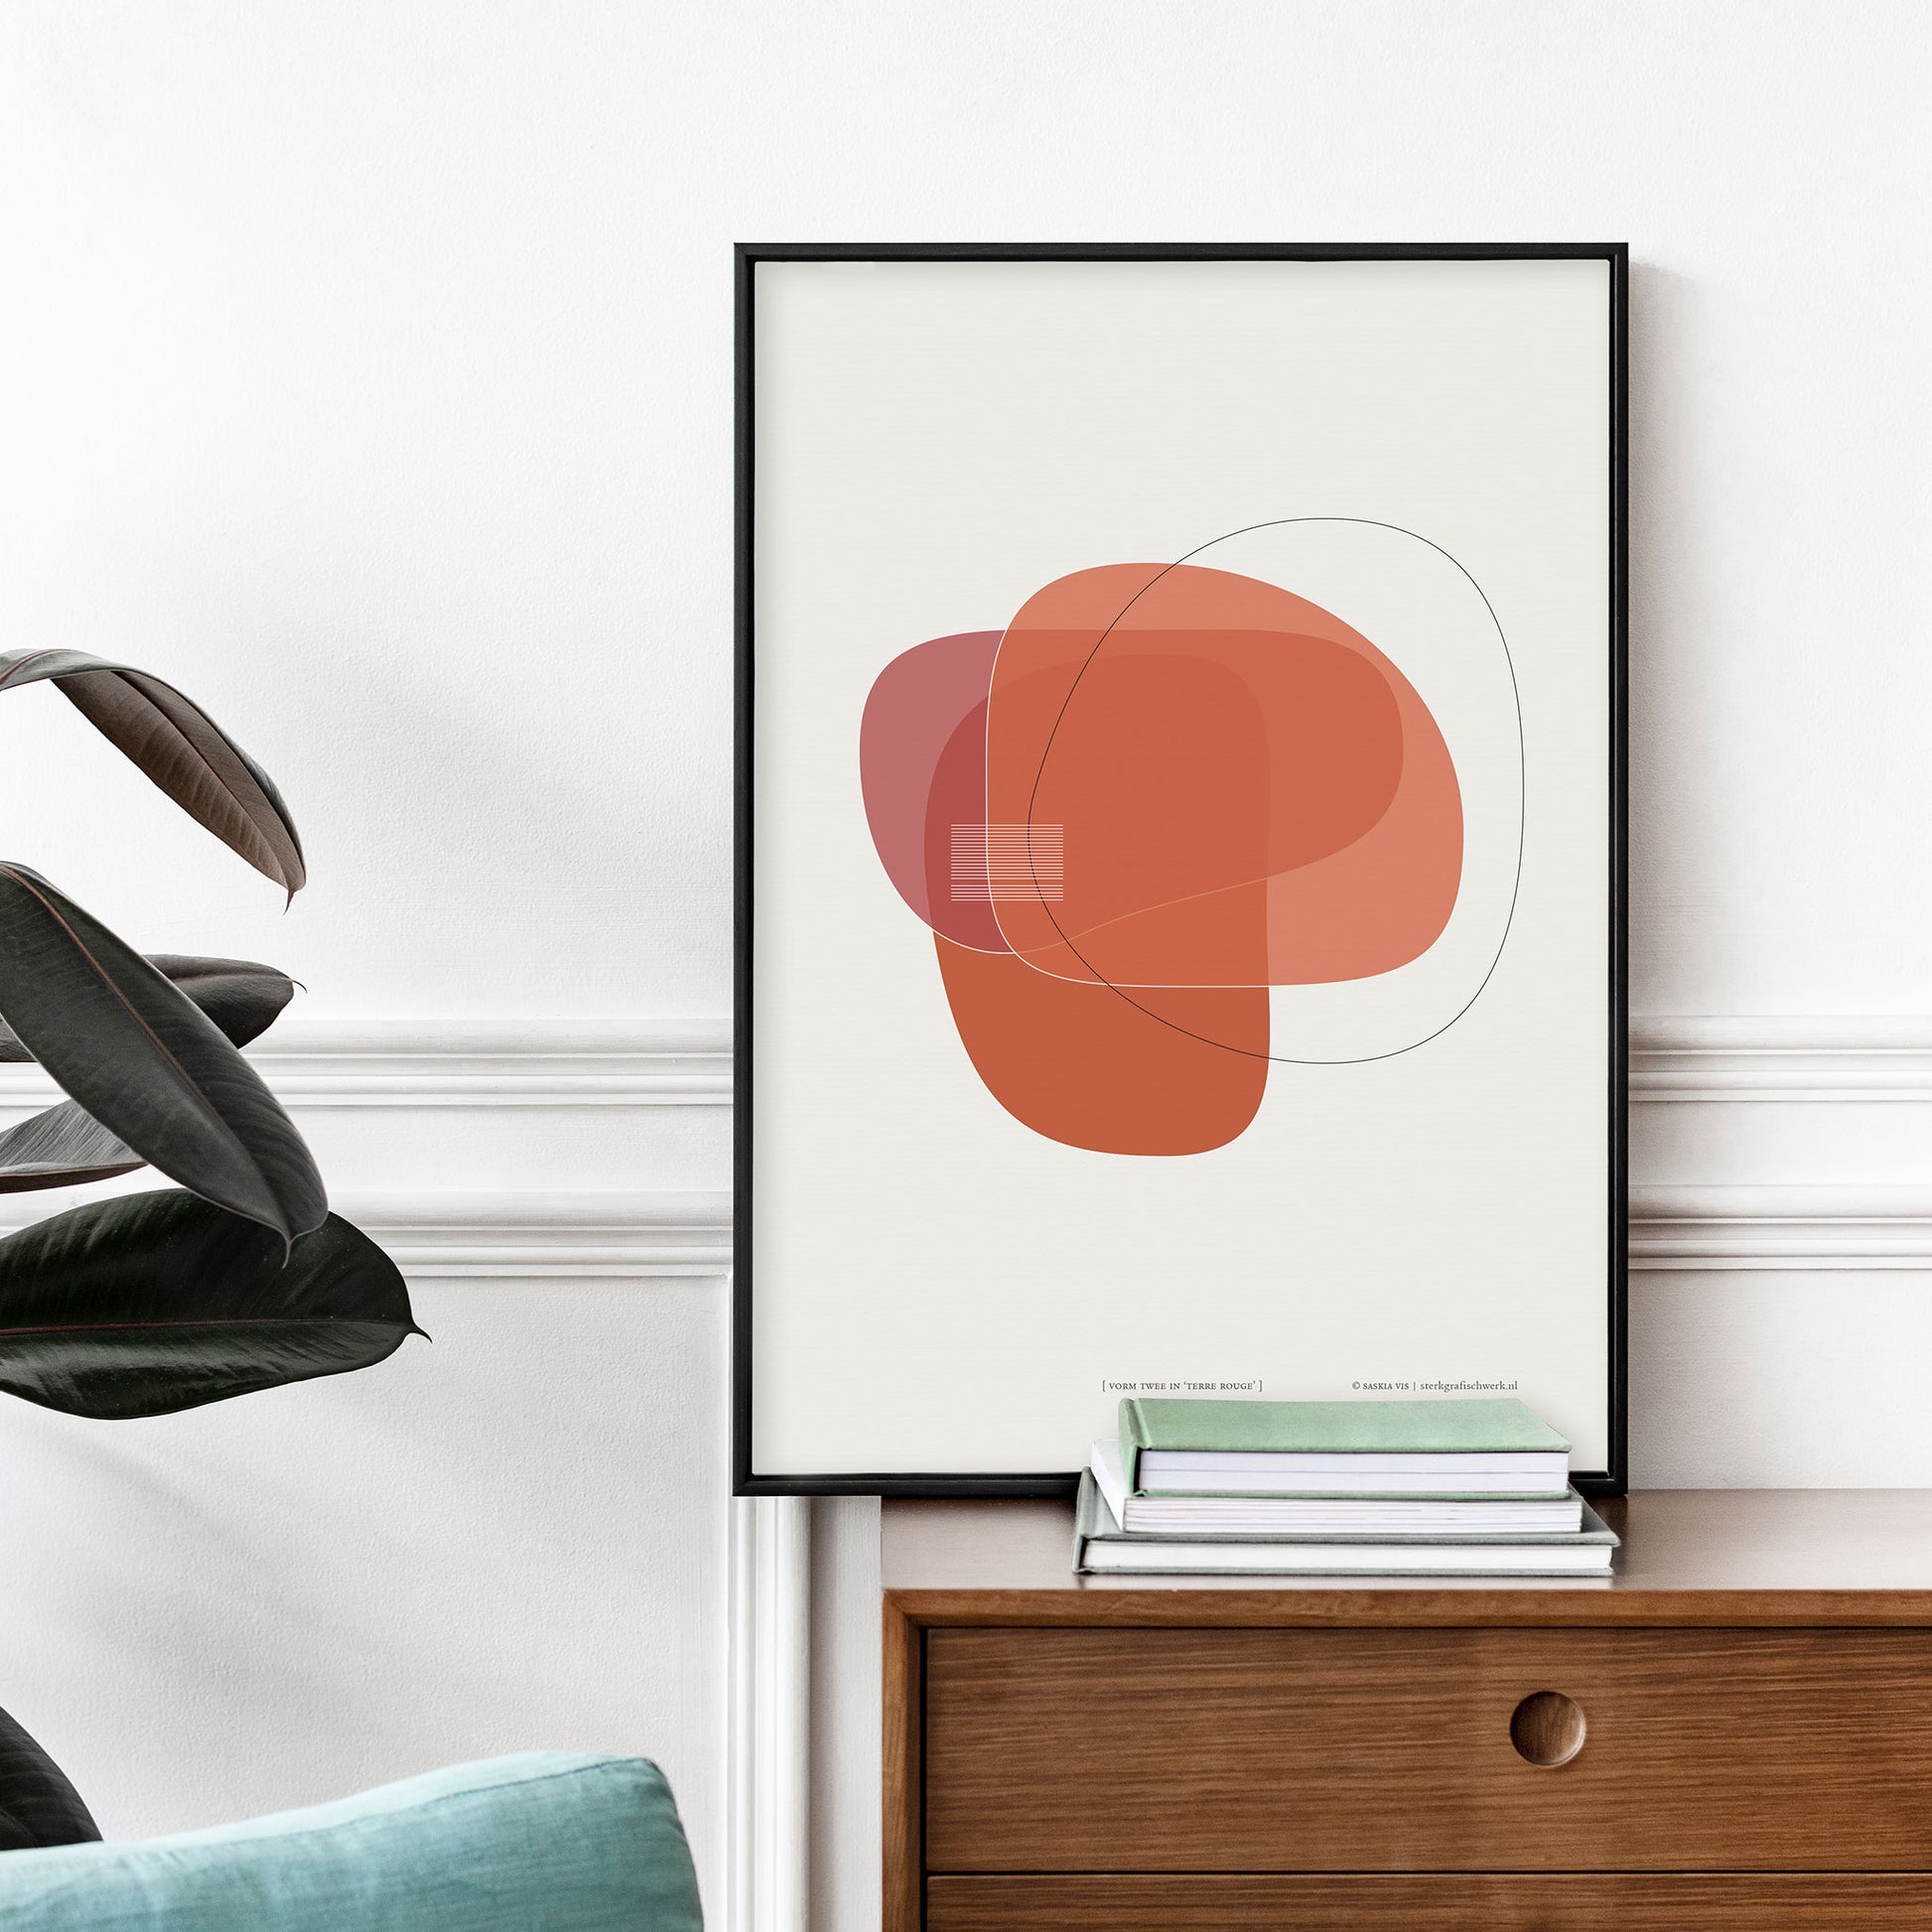 Productafbeelding poster "vorm twee in terre rouge" staande op een wandmeubel tegen een decoratieve wand ingelijst in een zwart frame